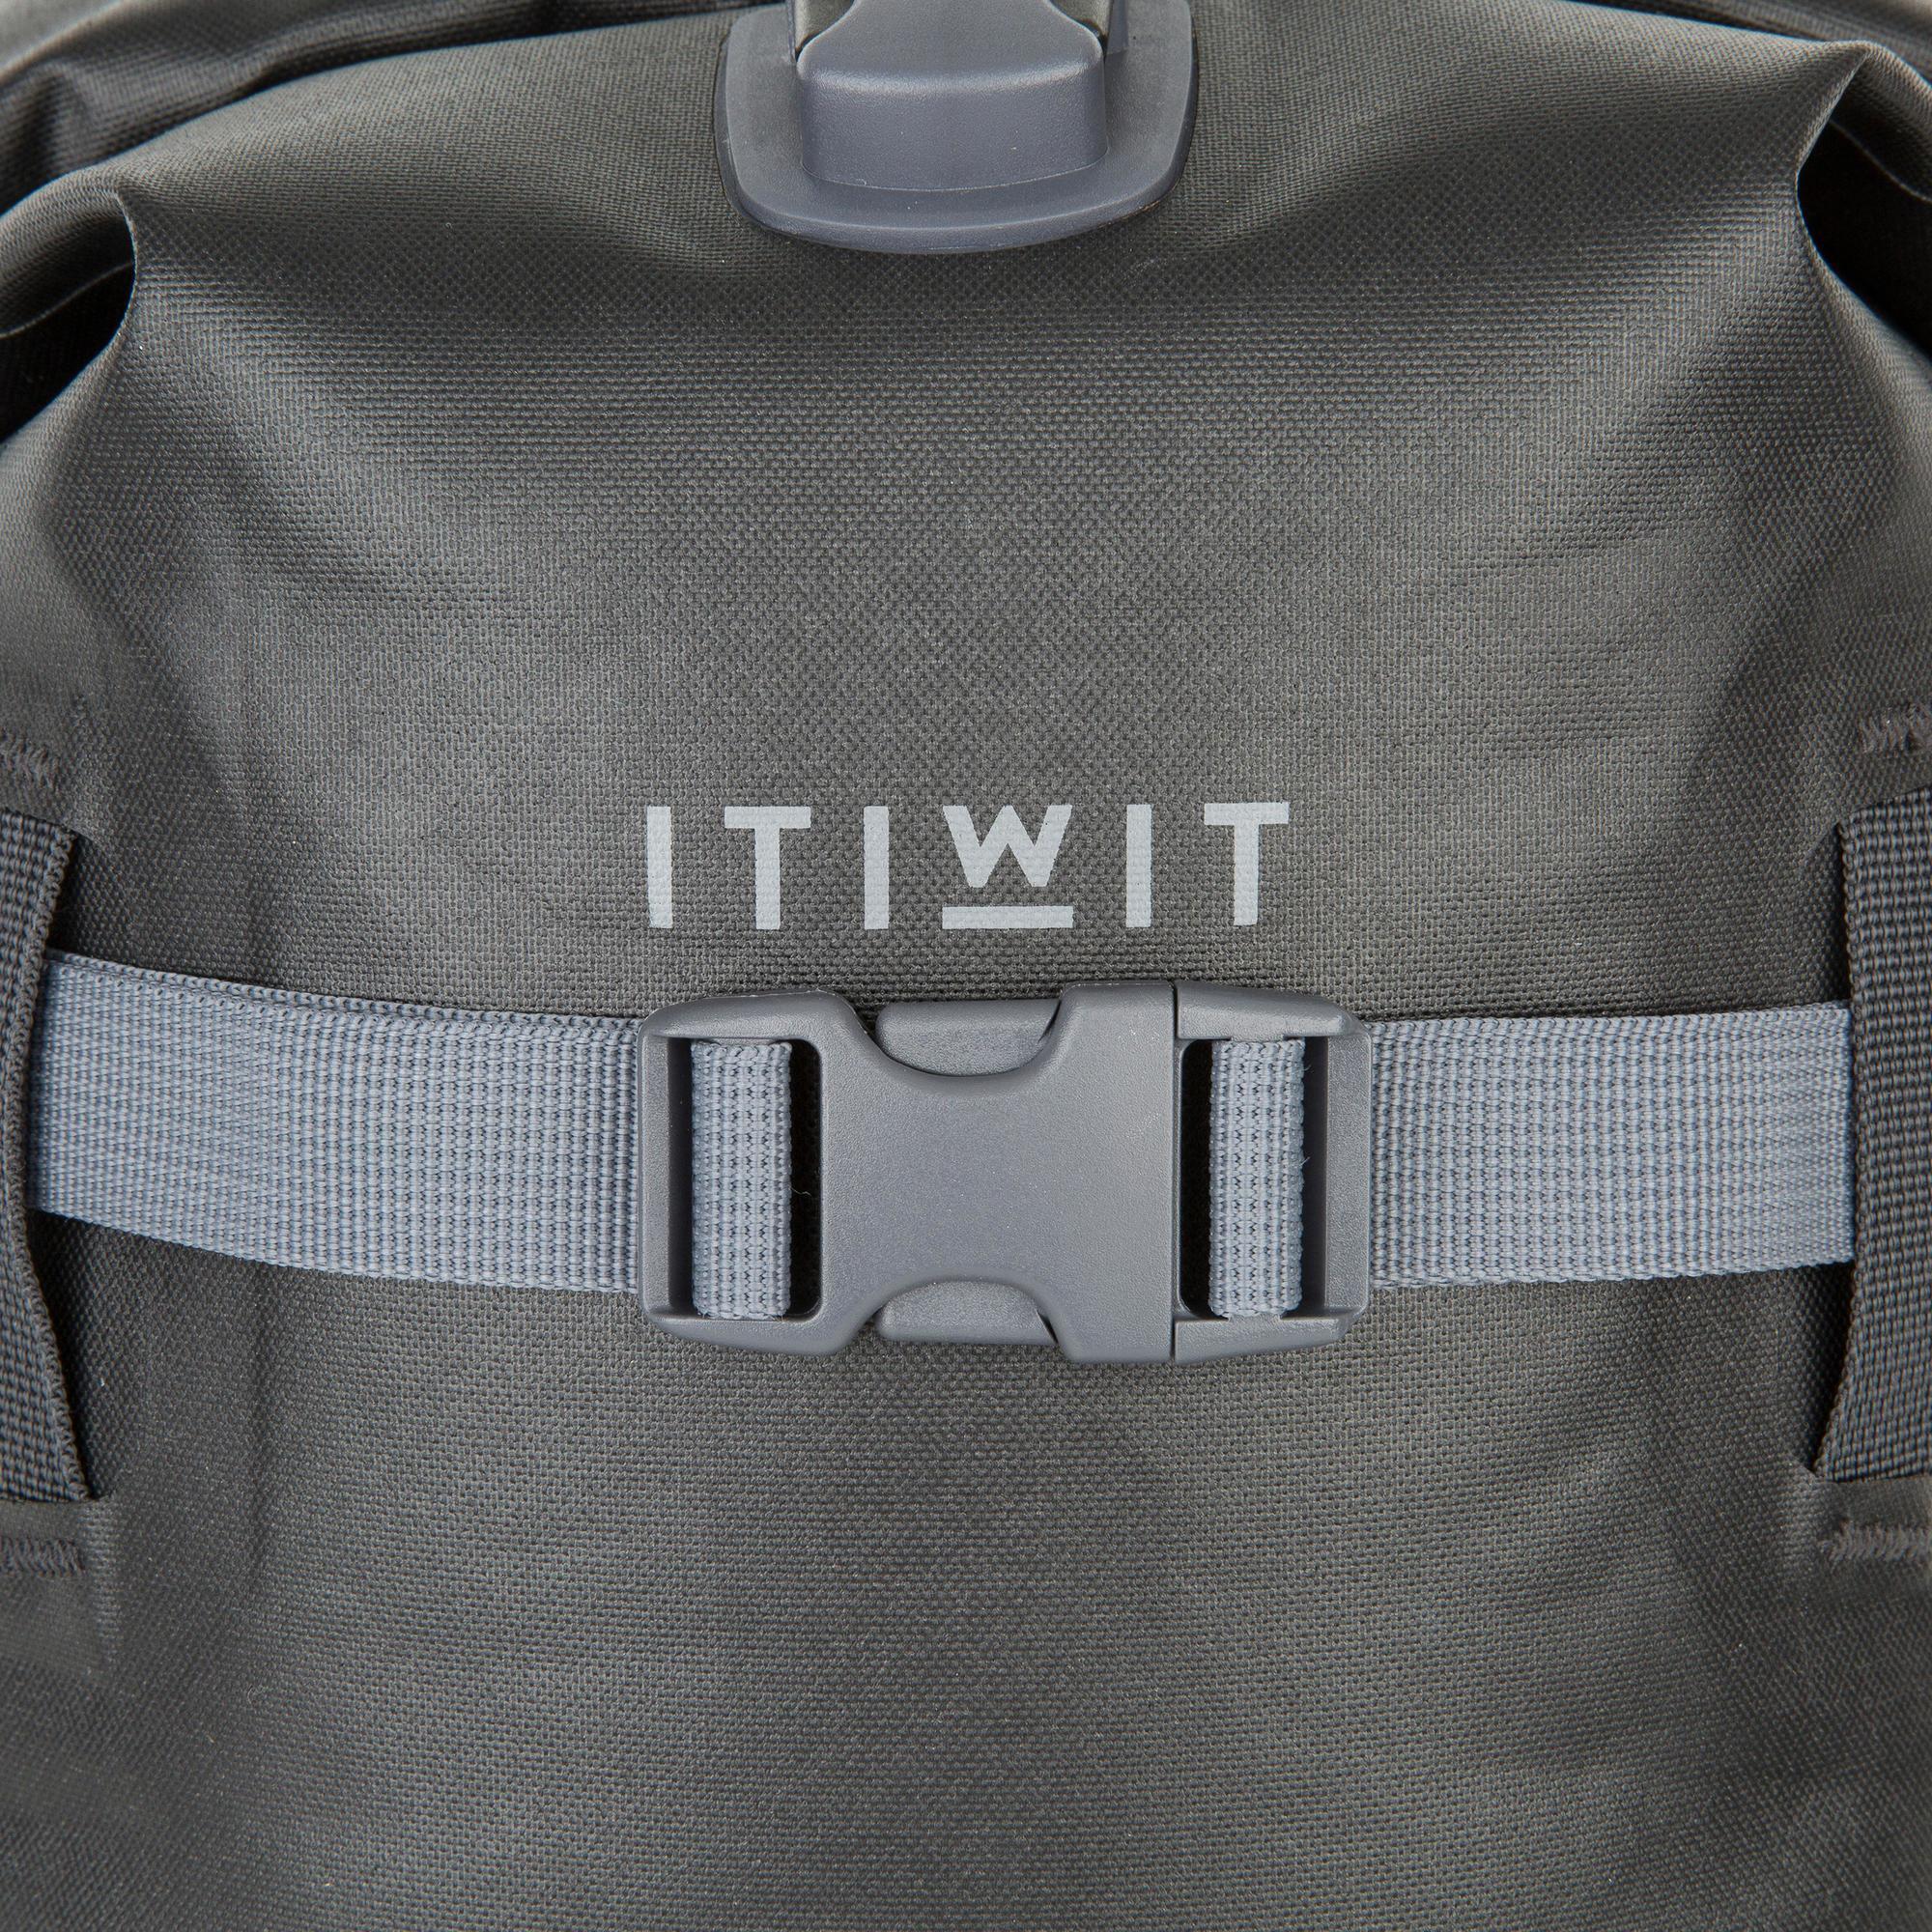 Waterproof Backpack 20L - Black 10/17